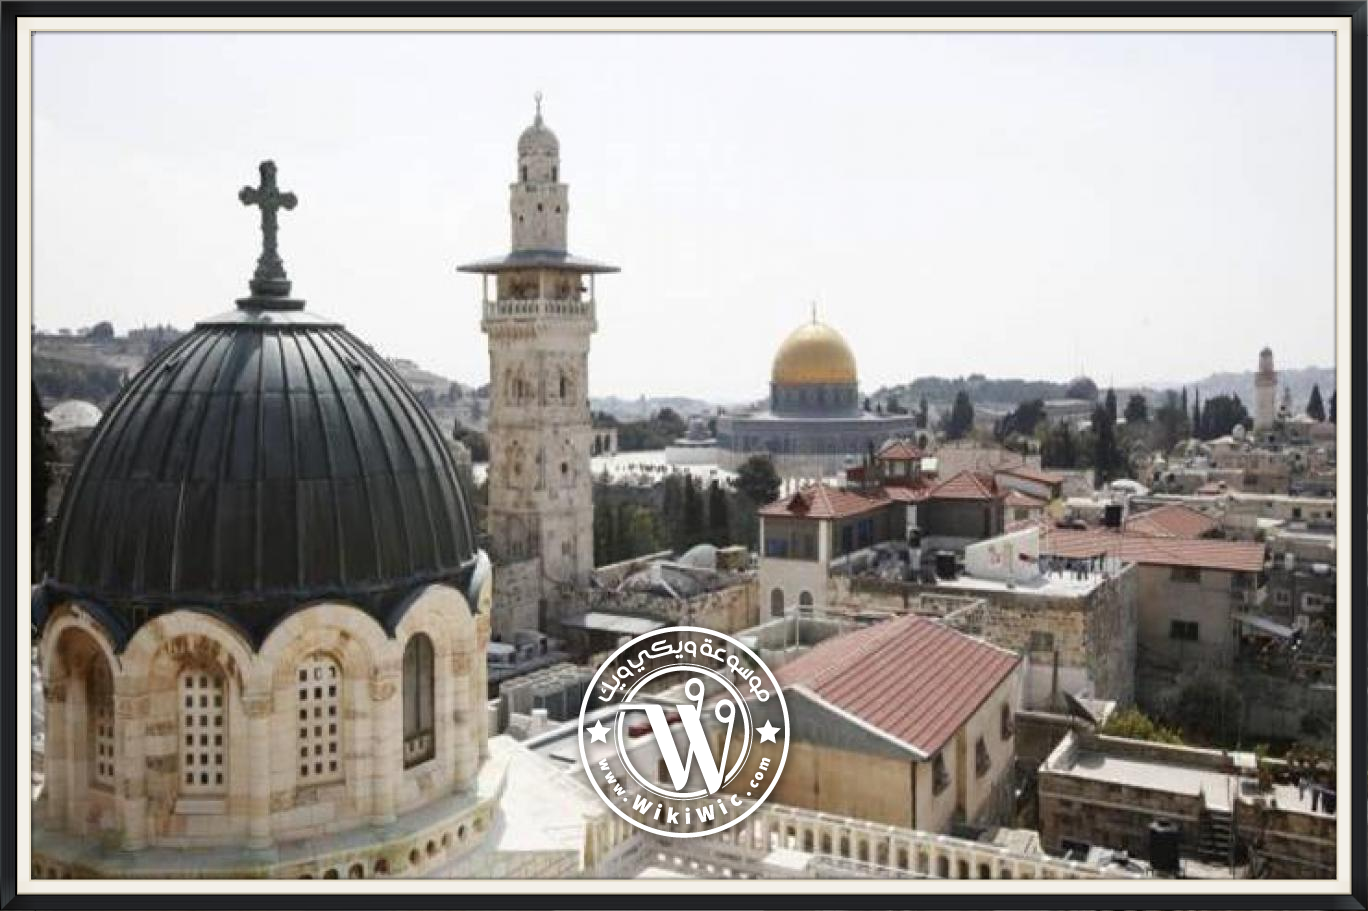 معلومات عن فلسطين تاريخ فلسطين وأبرز معالمها Wiki Wic ويكي ويك